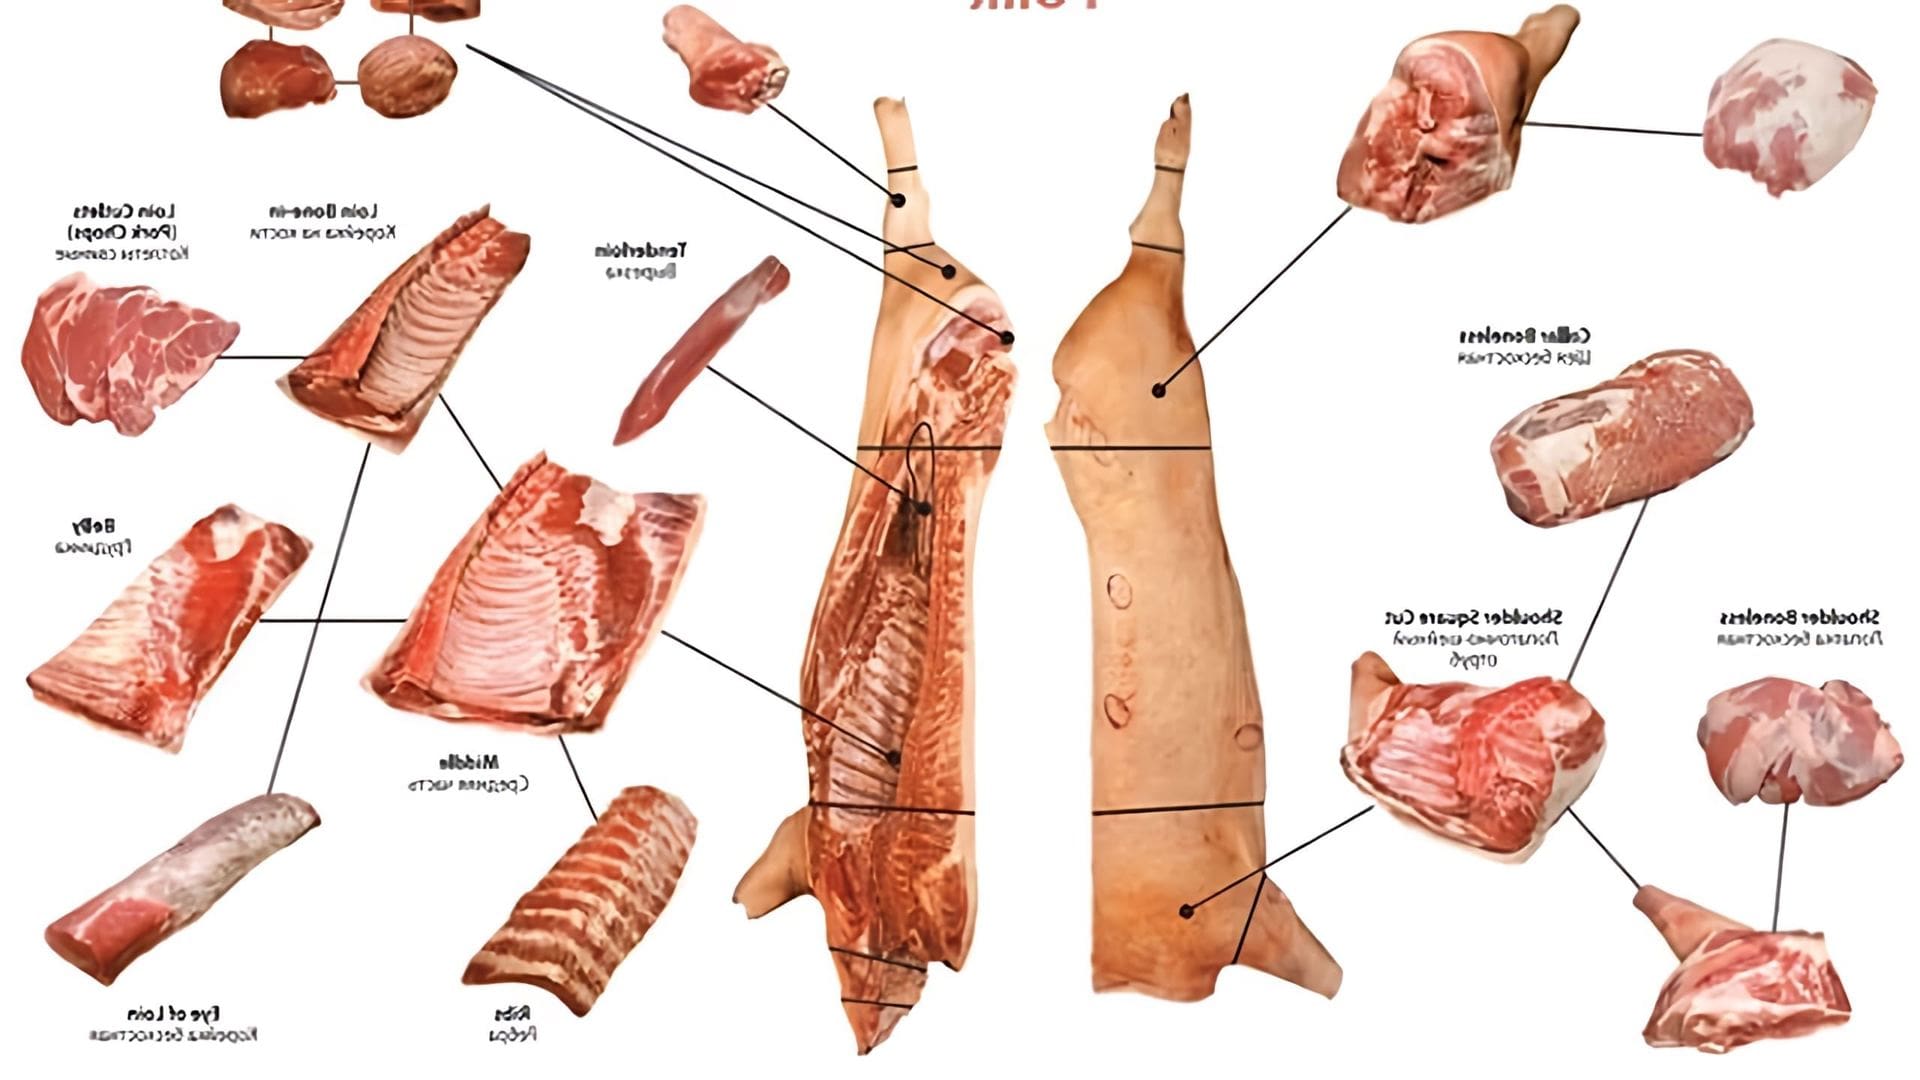 В данном видео-ролике будет показан процесс обвалки свинины, начиная от выбора качественного мяса и заканчивая его разделением на отдельные части